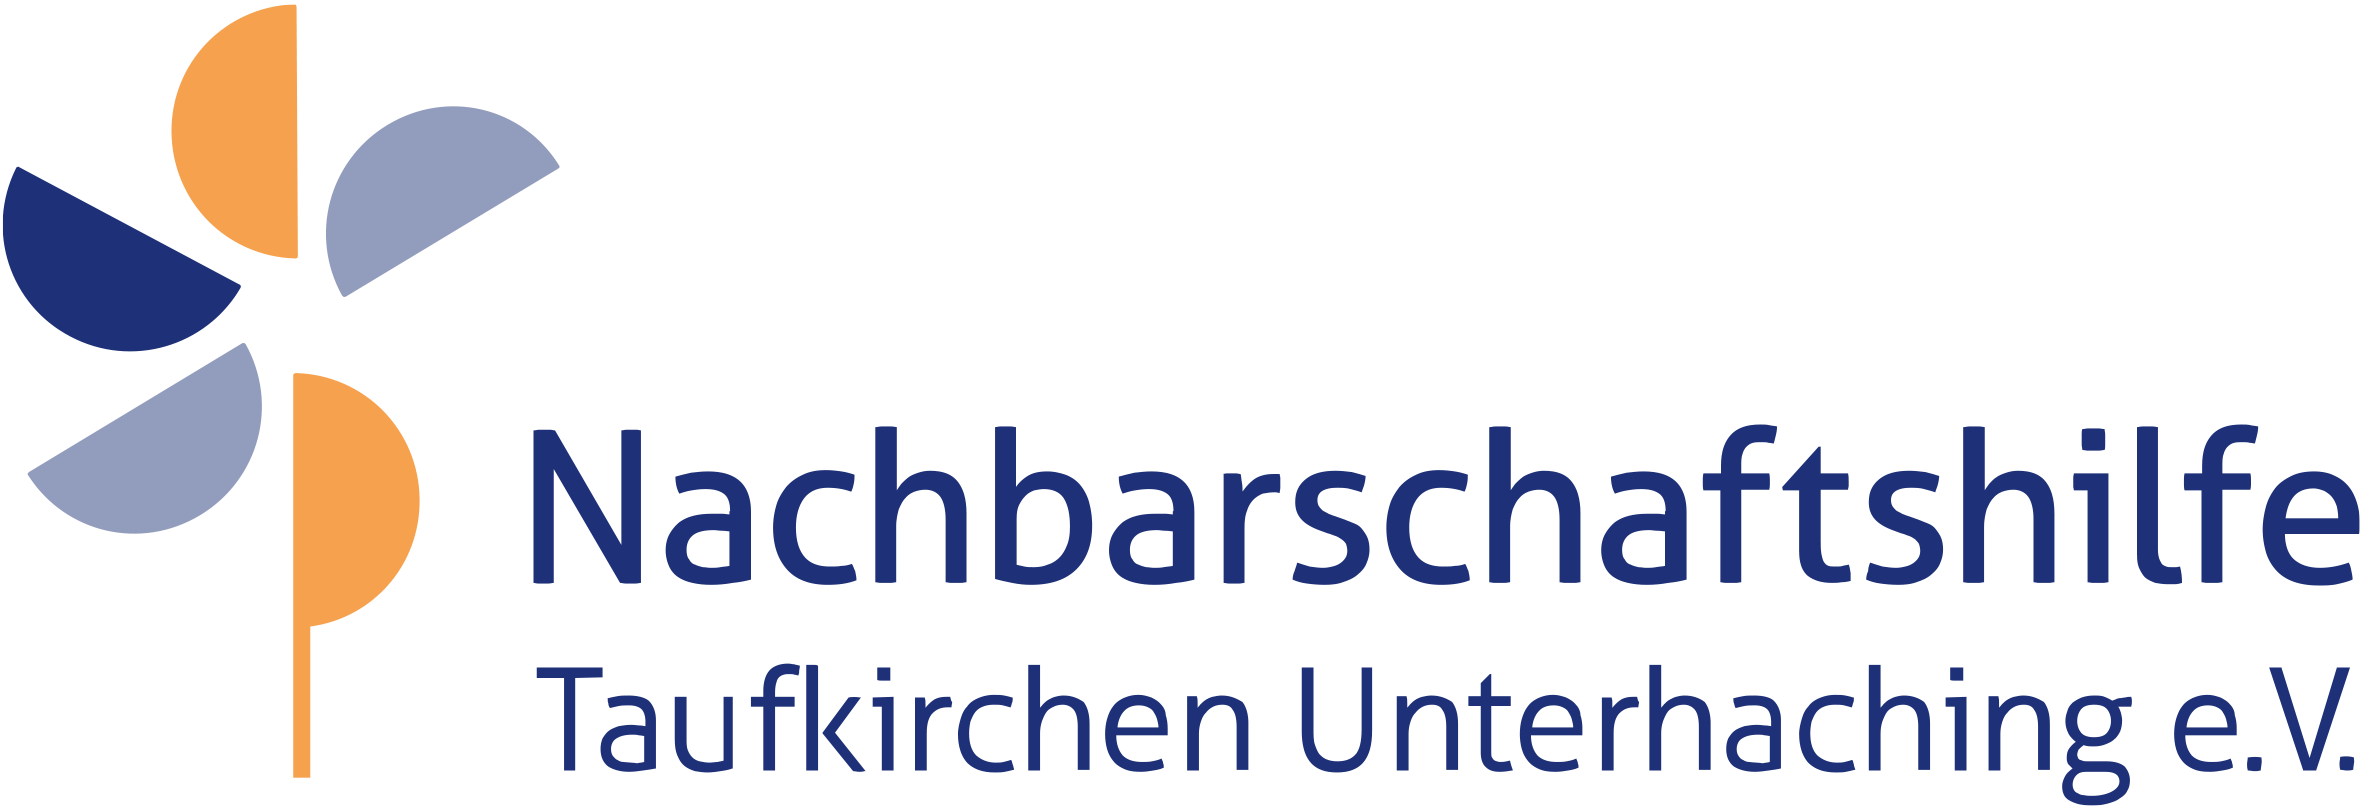 Nachbarschaftshilfe Taufkirchen Unterhaching - Auszeichnungen